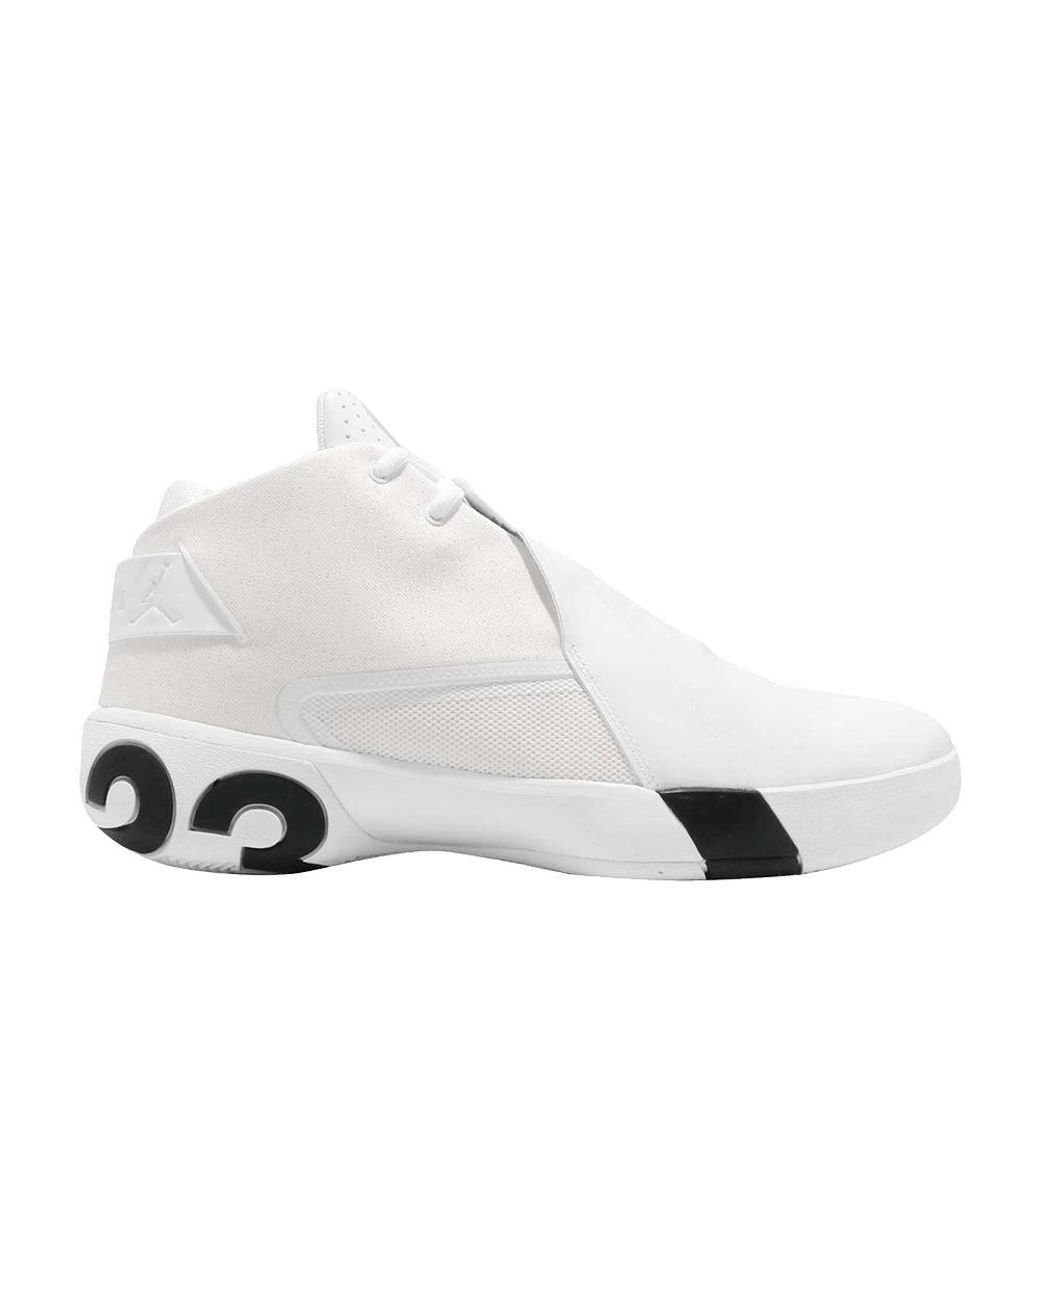 Nike Jordan Ultra Fly 3 Pfx 'white' Men